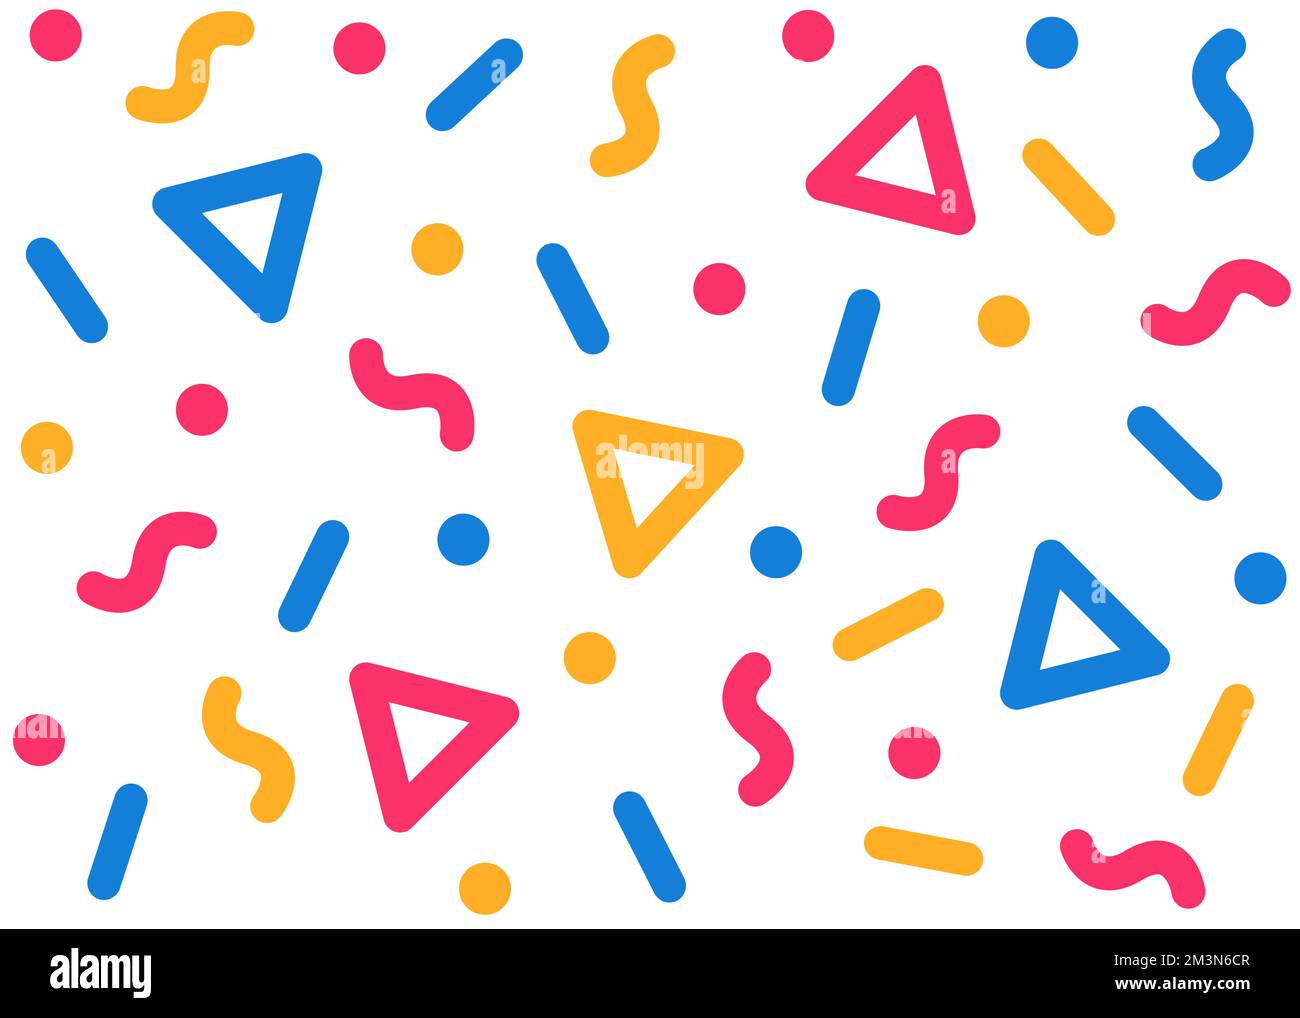 Konfetti-Vektormuster geometrischer Hintergrund. Farbenfrohes, nahtloses Muster mit geometrischen runden Elementen. Vektormuster fett Stock Vektor